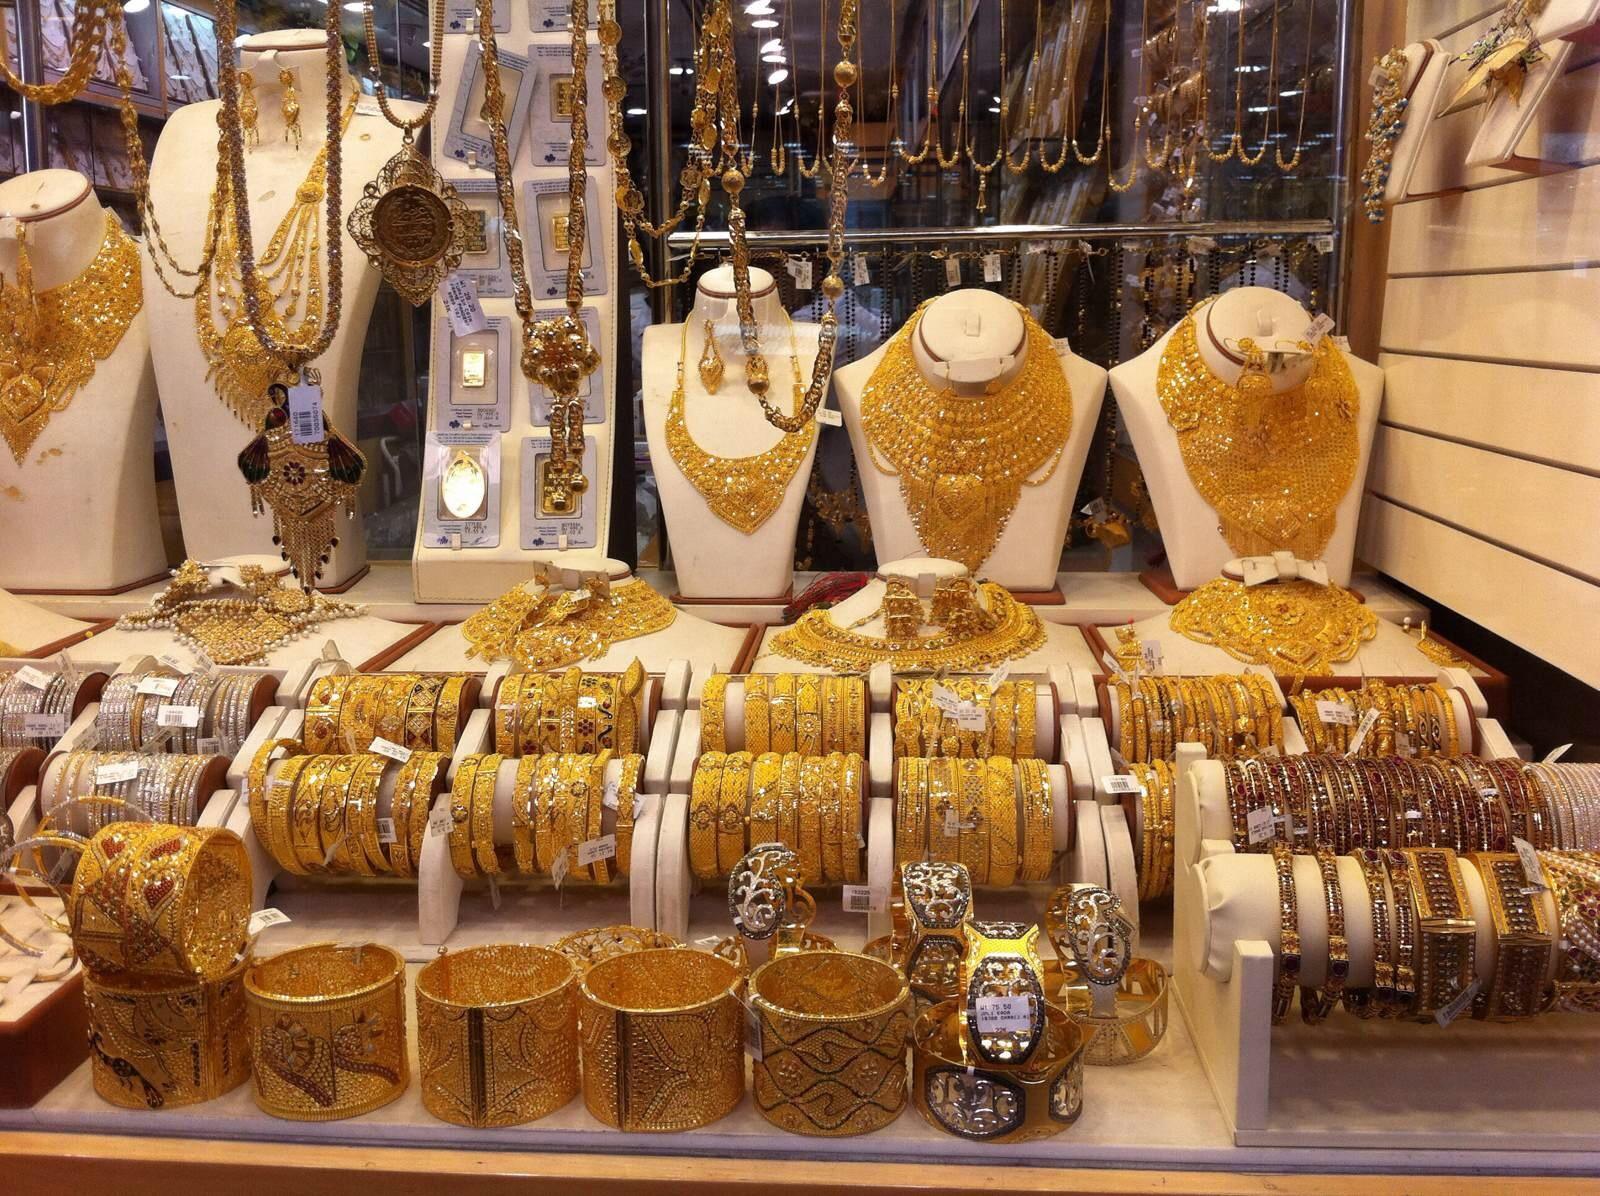 中国去年黄金珠宝需求为646.9吨 远高于排名第二的印度